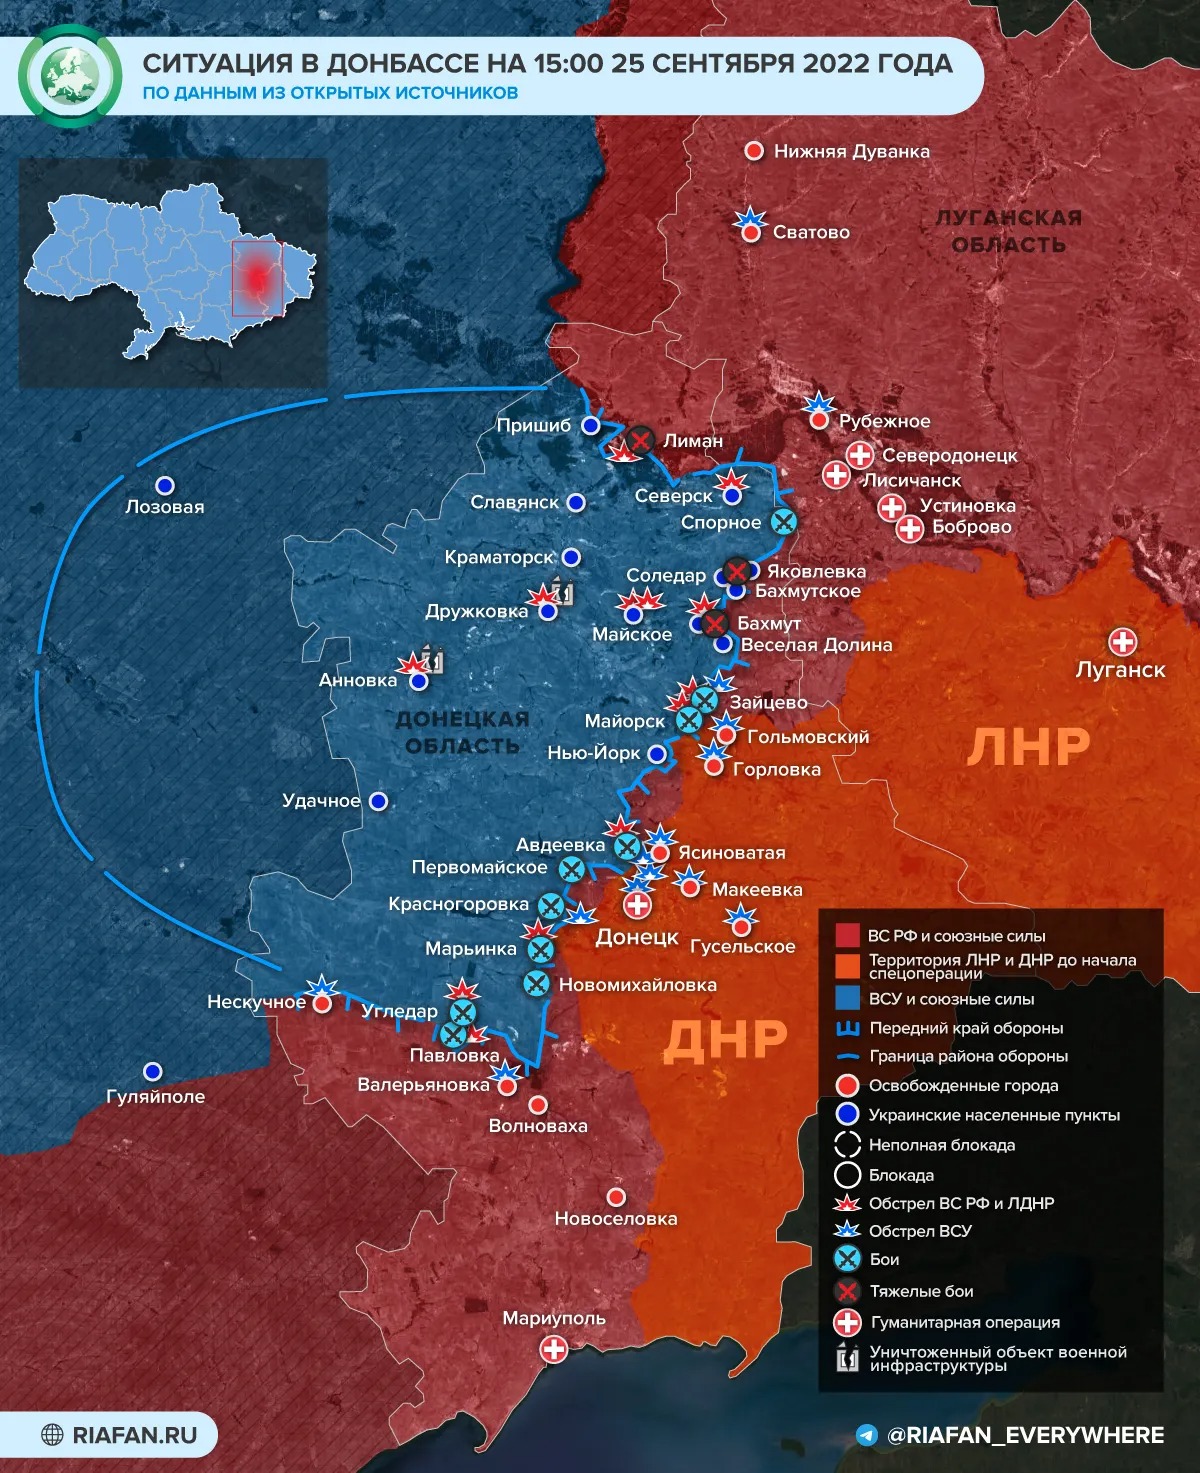 Агония Киева перед концом: свежие новости военной спецоперации на Украине на сегодня 26 сентября 2022 года